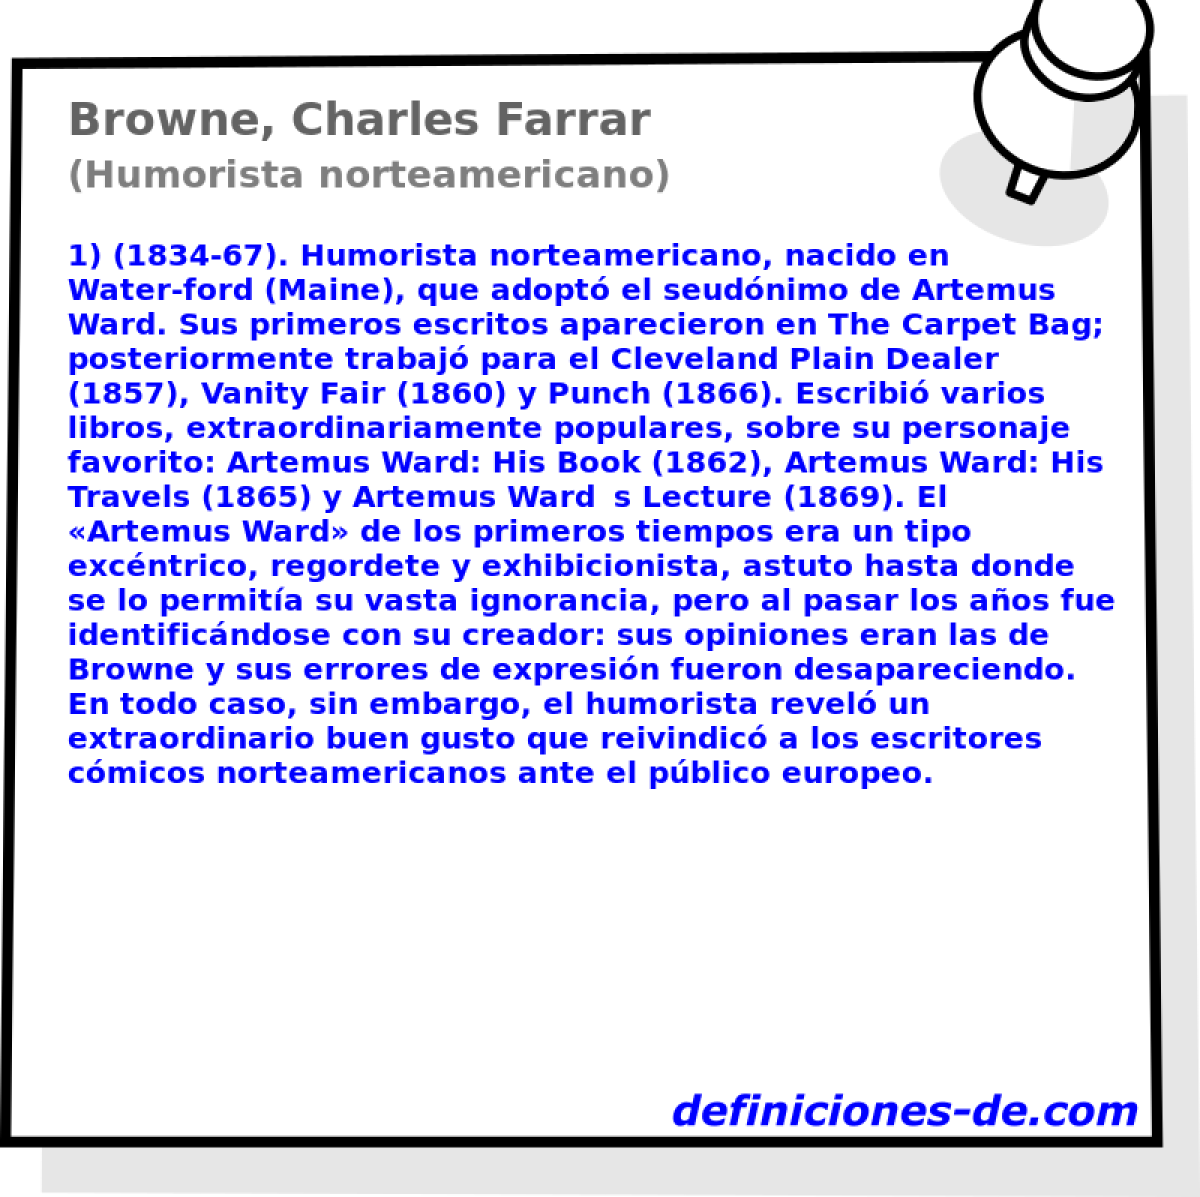 Browne, Charles Farrar (Humorista norteamericano)